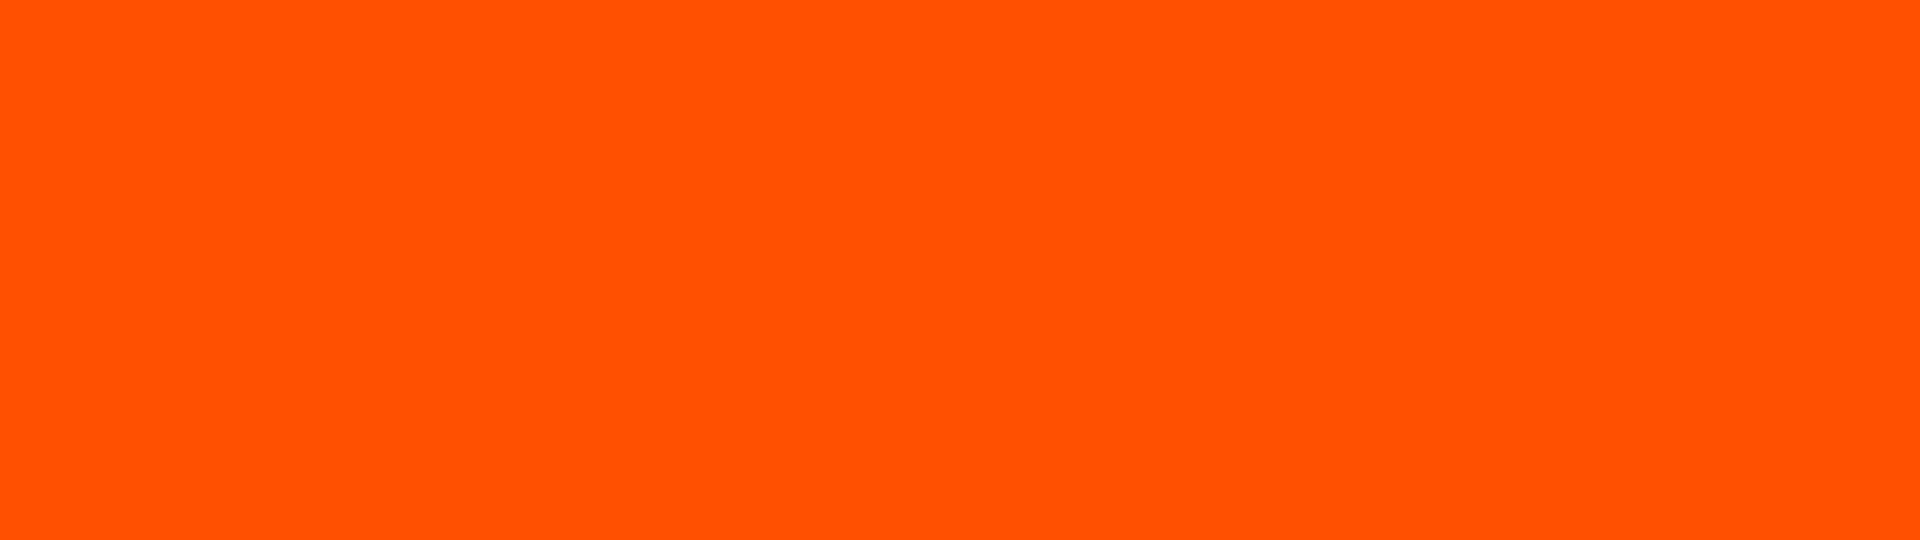 Esimerkkikuva Metropolian Oranssista väristä.